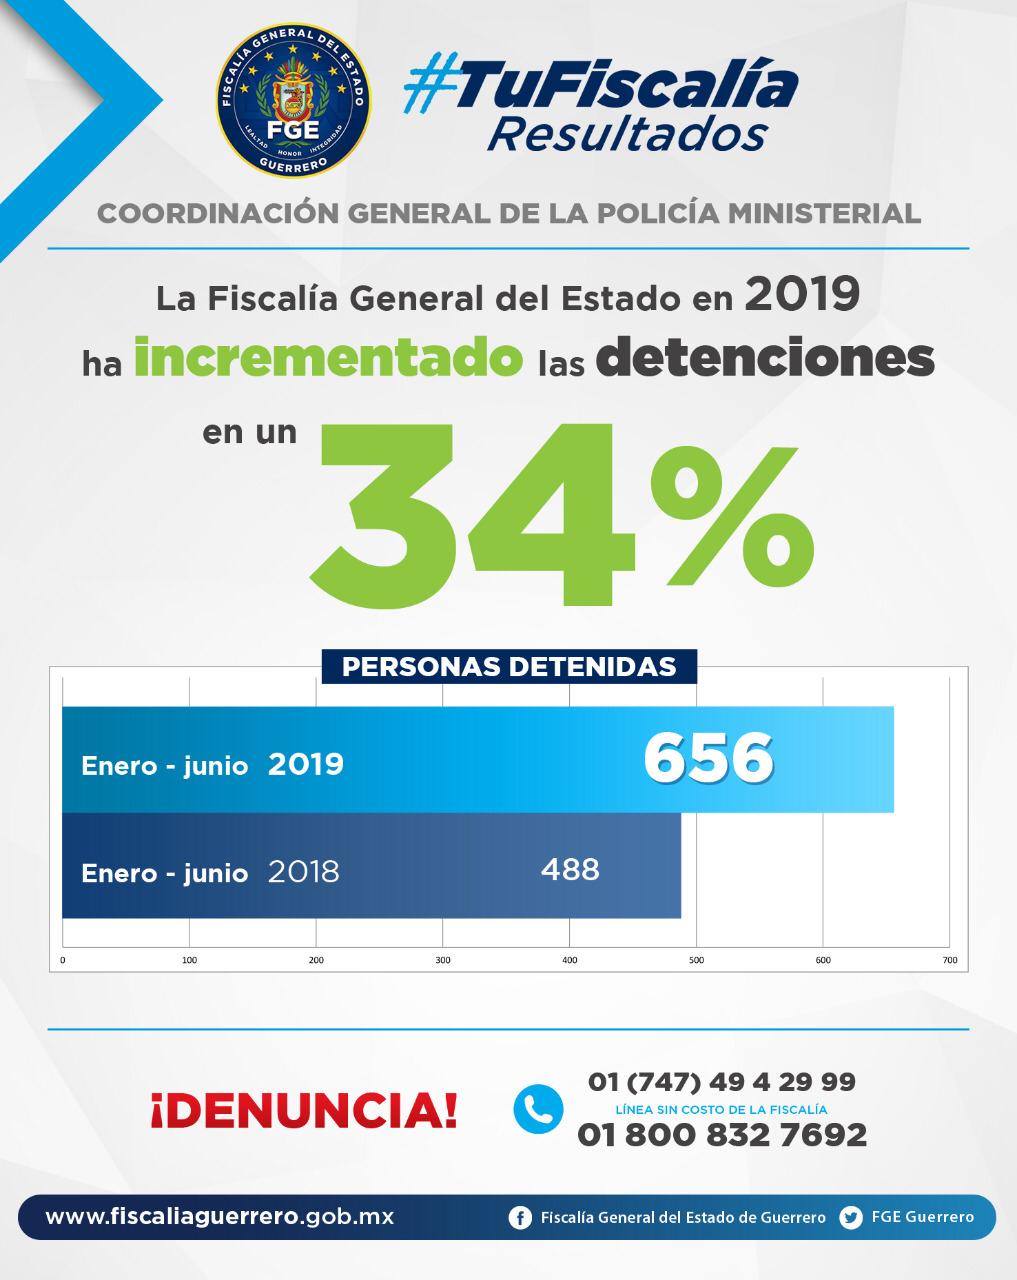 FGE AUMENTA UN 34% DETENCIONES A DIFERENCIA DE EL AÑO PASADO